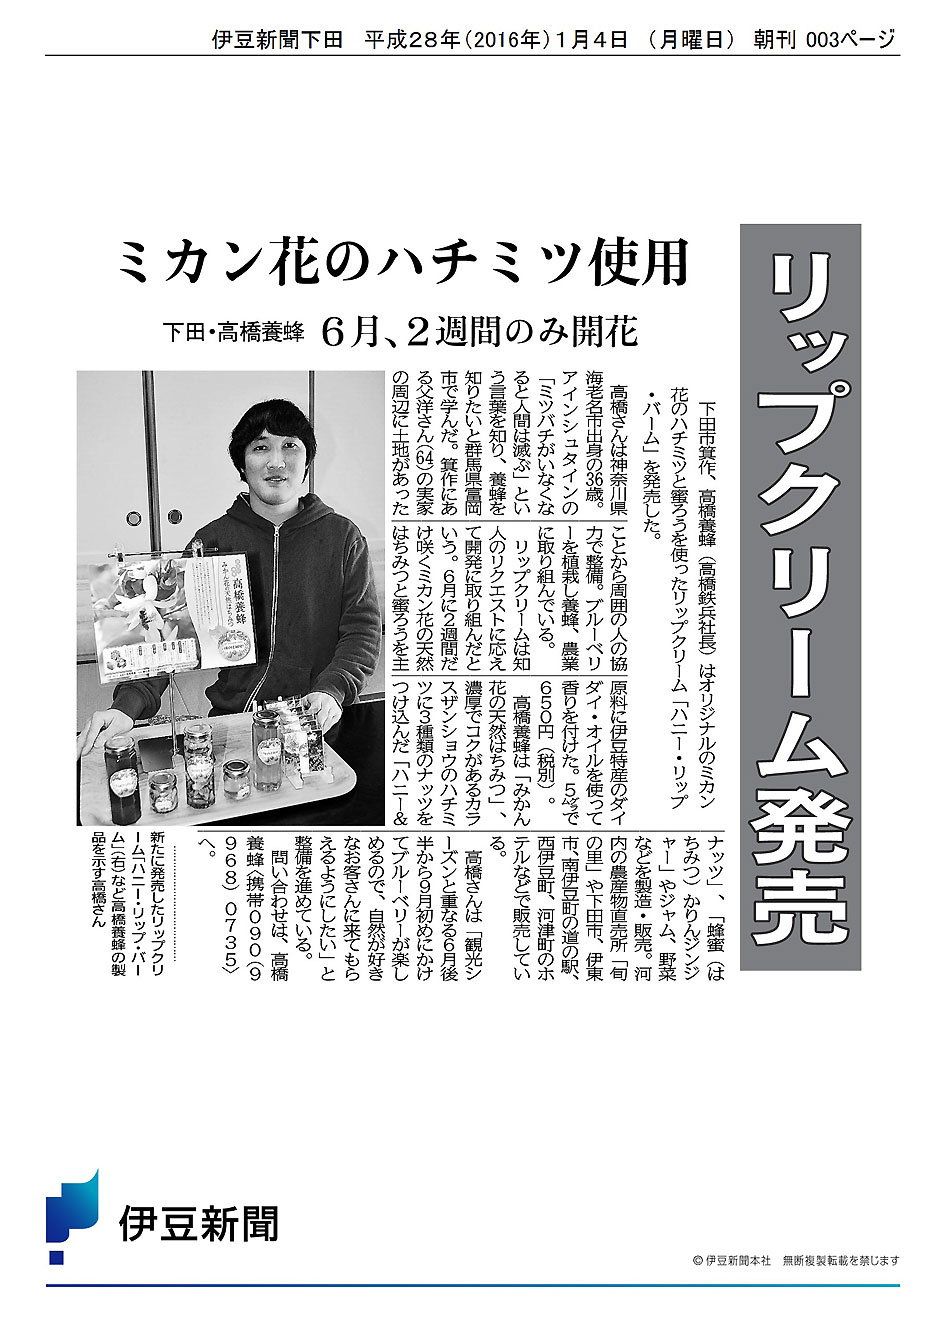 伊豆新聞の記事伊豆新聞さんでリップクリームを紹介していただきました